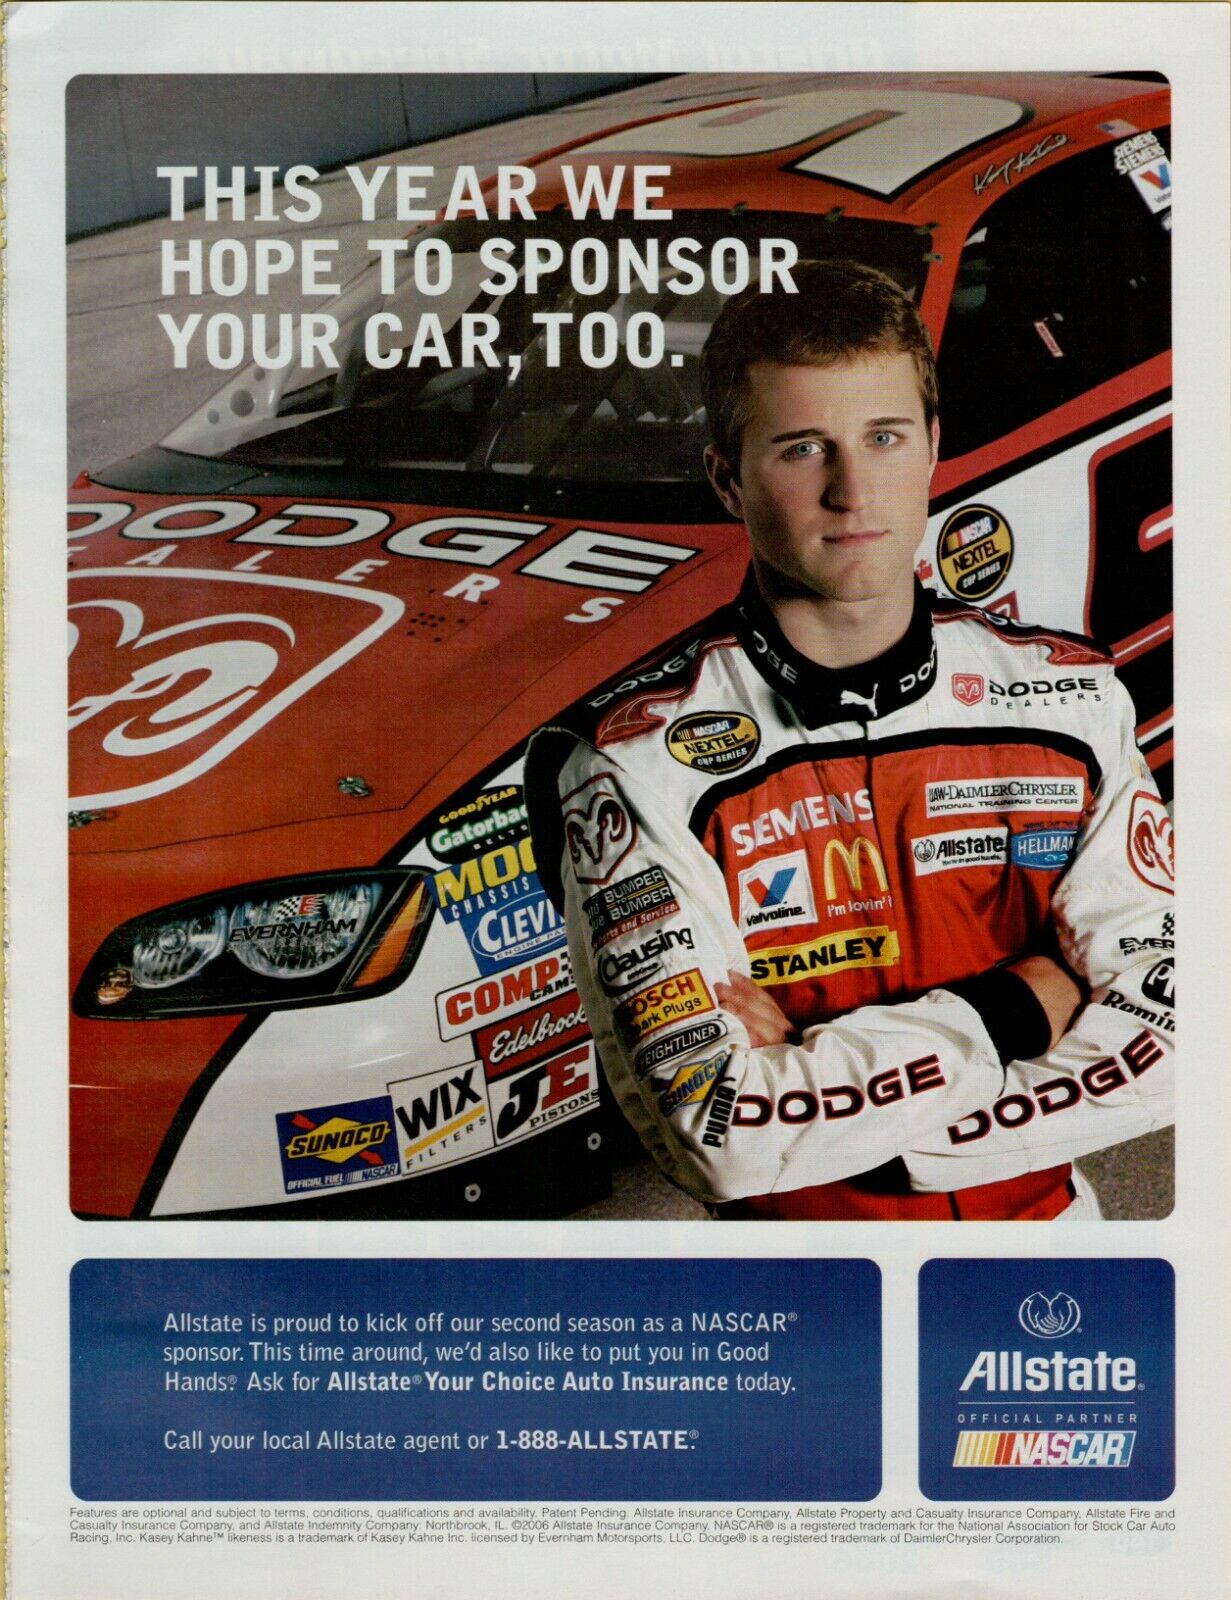 2006 Allstate NASCAR Sponsor Kasey Kahne #9 Dodge Race Car Vintage Print Ad